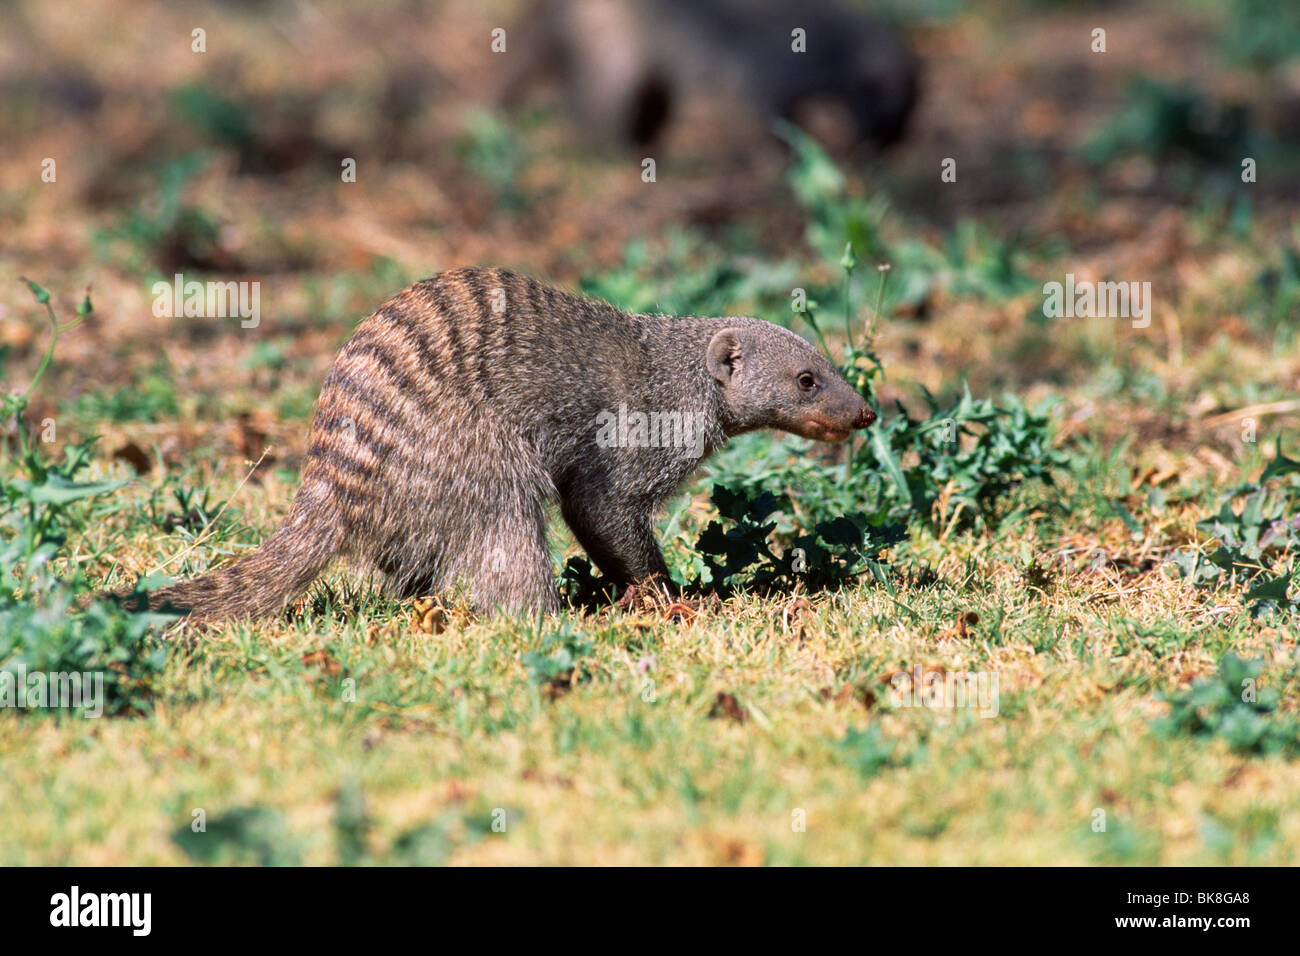 Banded Mongoose (Mungo mungo) looking for food, Etosha National Park, Namibia, Africa Stock Photo